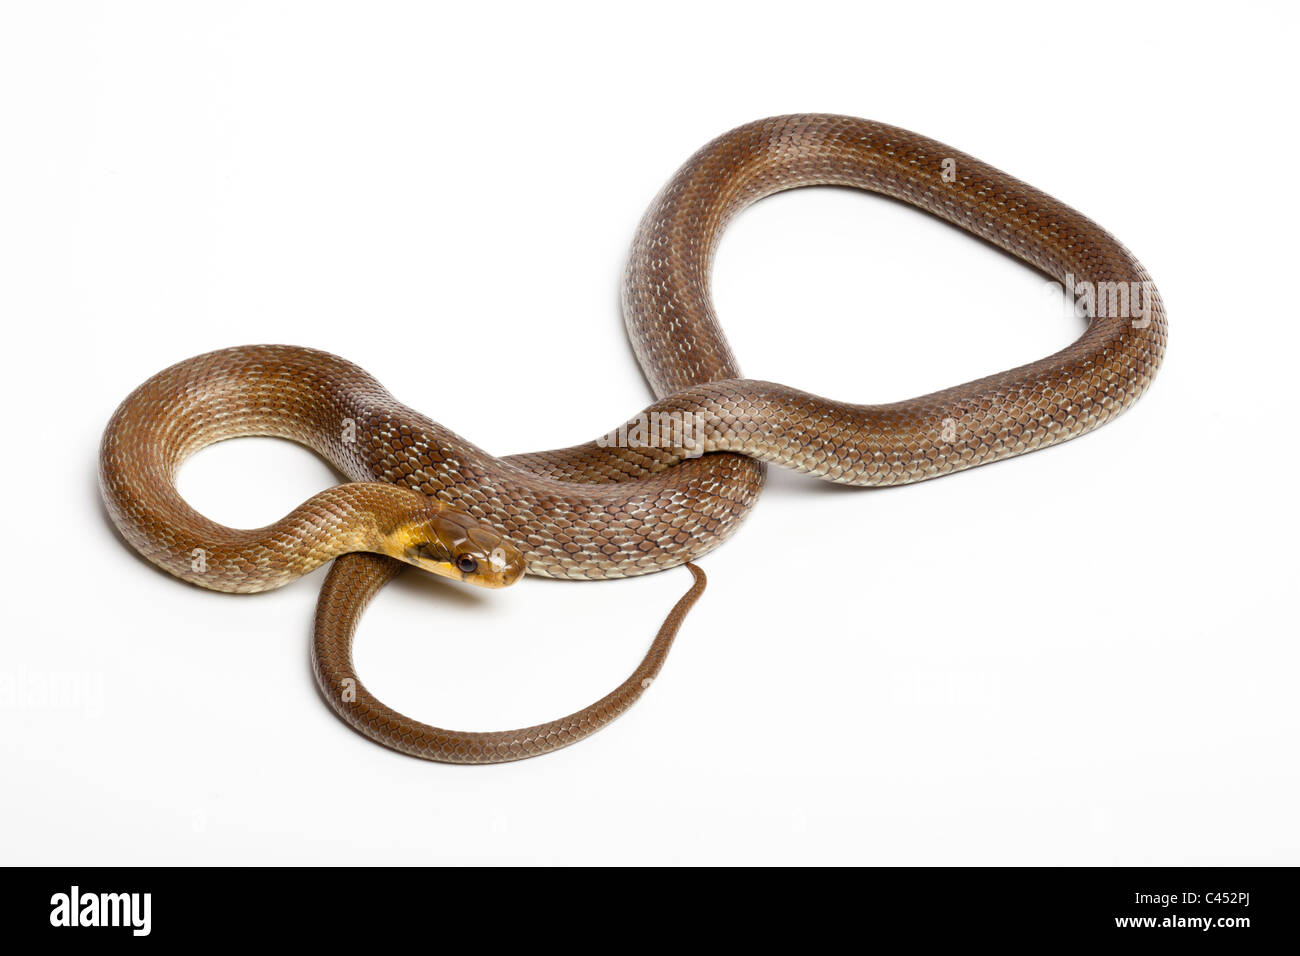 Aesculapian snake, Zamenis longissimus (formerly Elaphe longissima) on white background Stock Photo